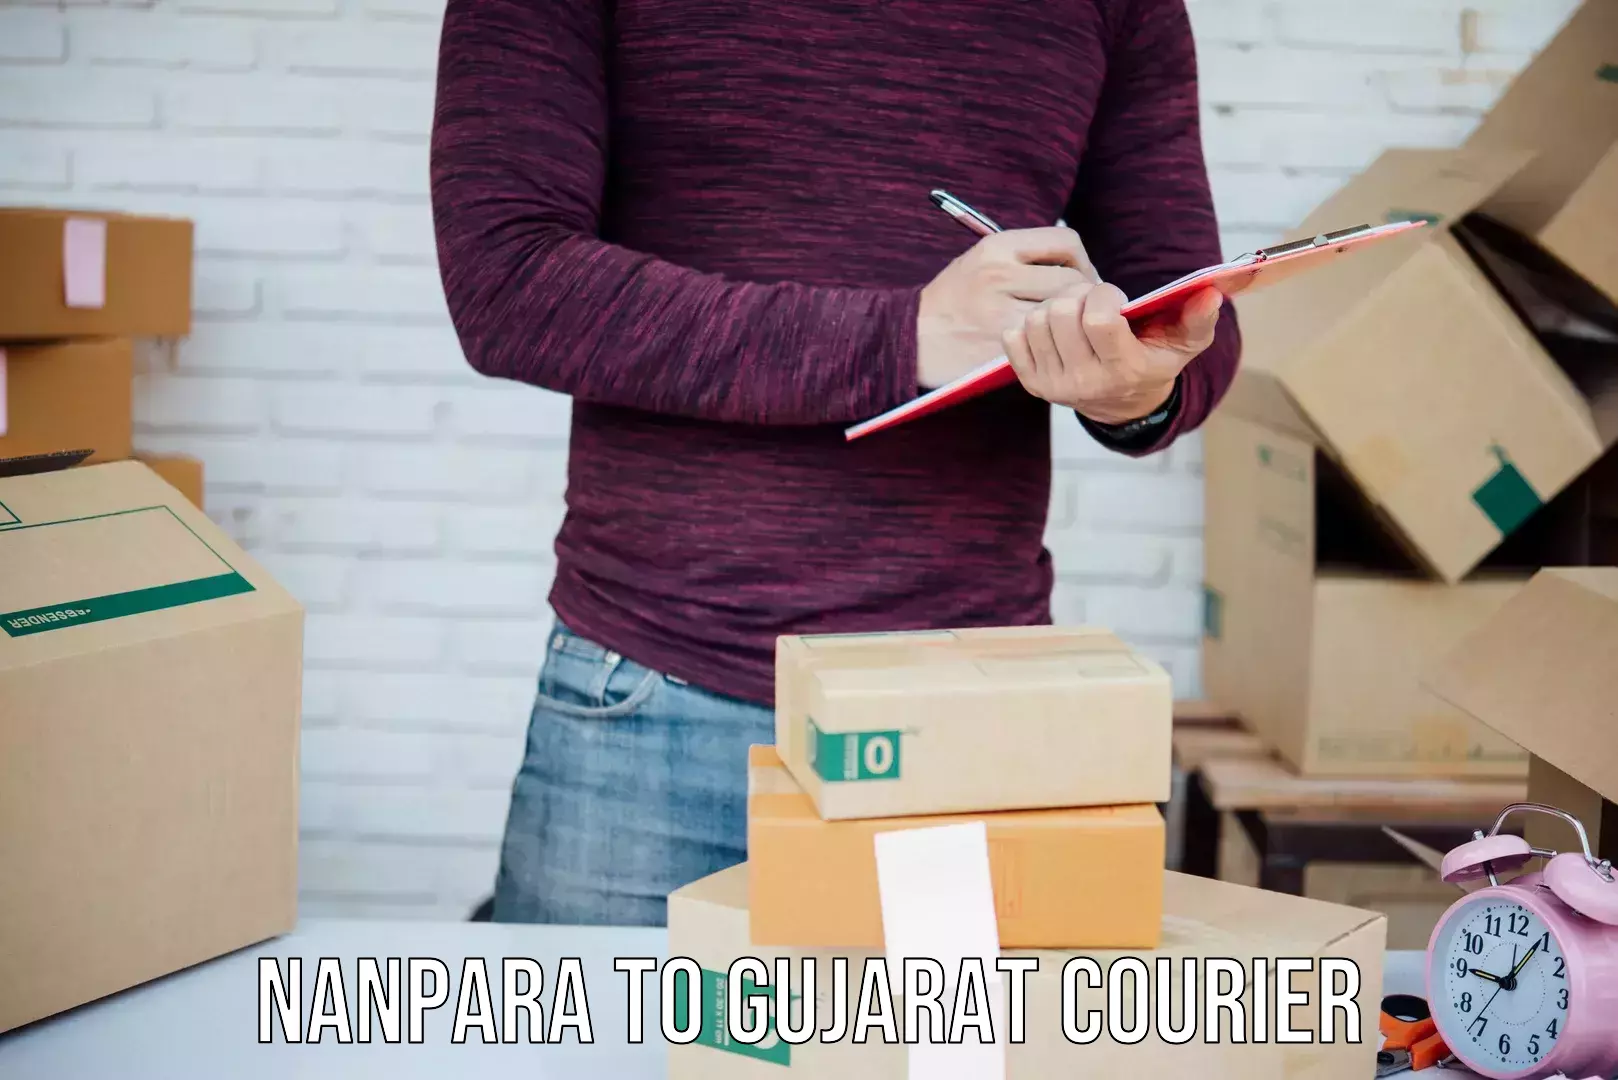 Digital courier platforms in Nanpara to Gujarat